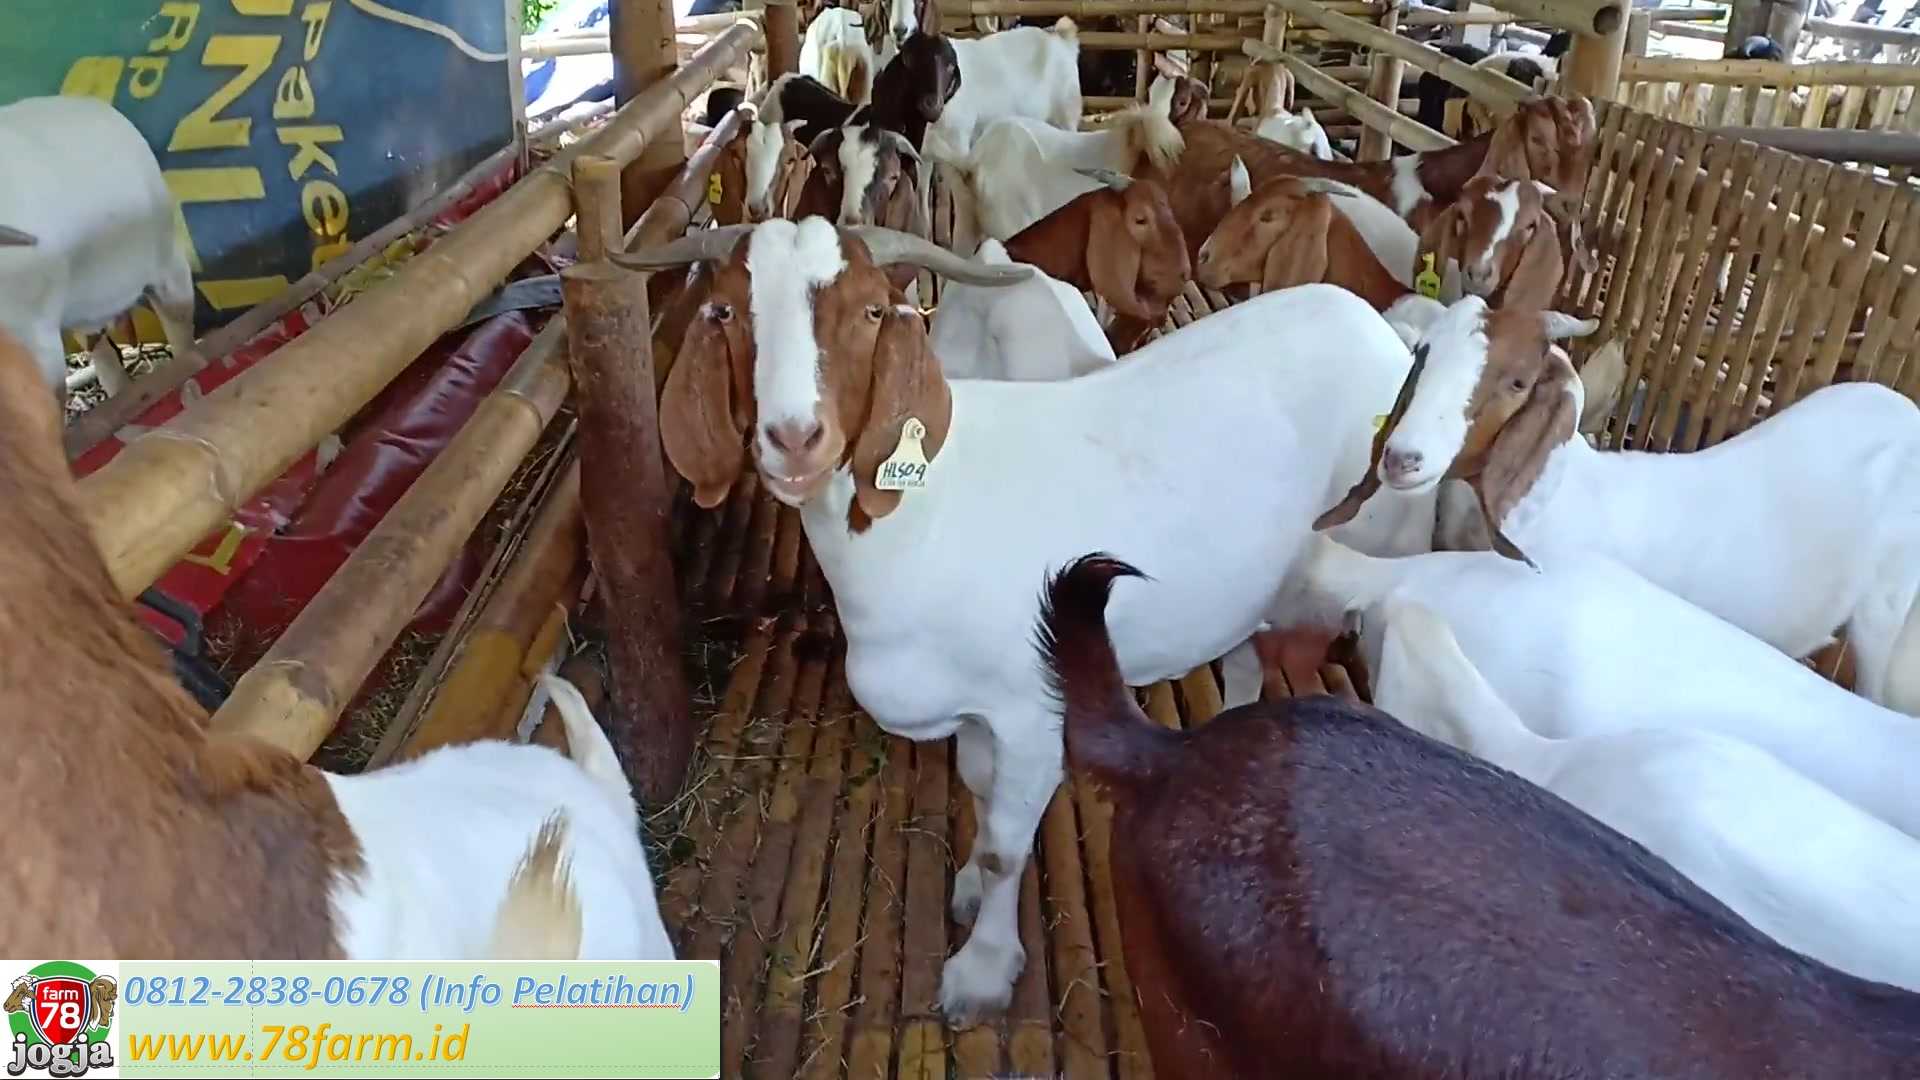 Pelatihan Peternakan Domba Garut Yogyakarta